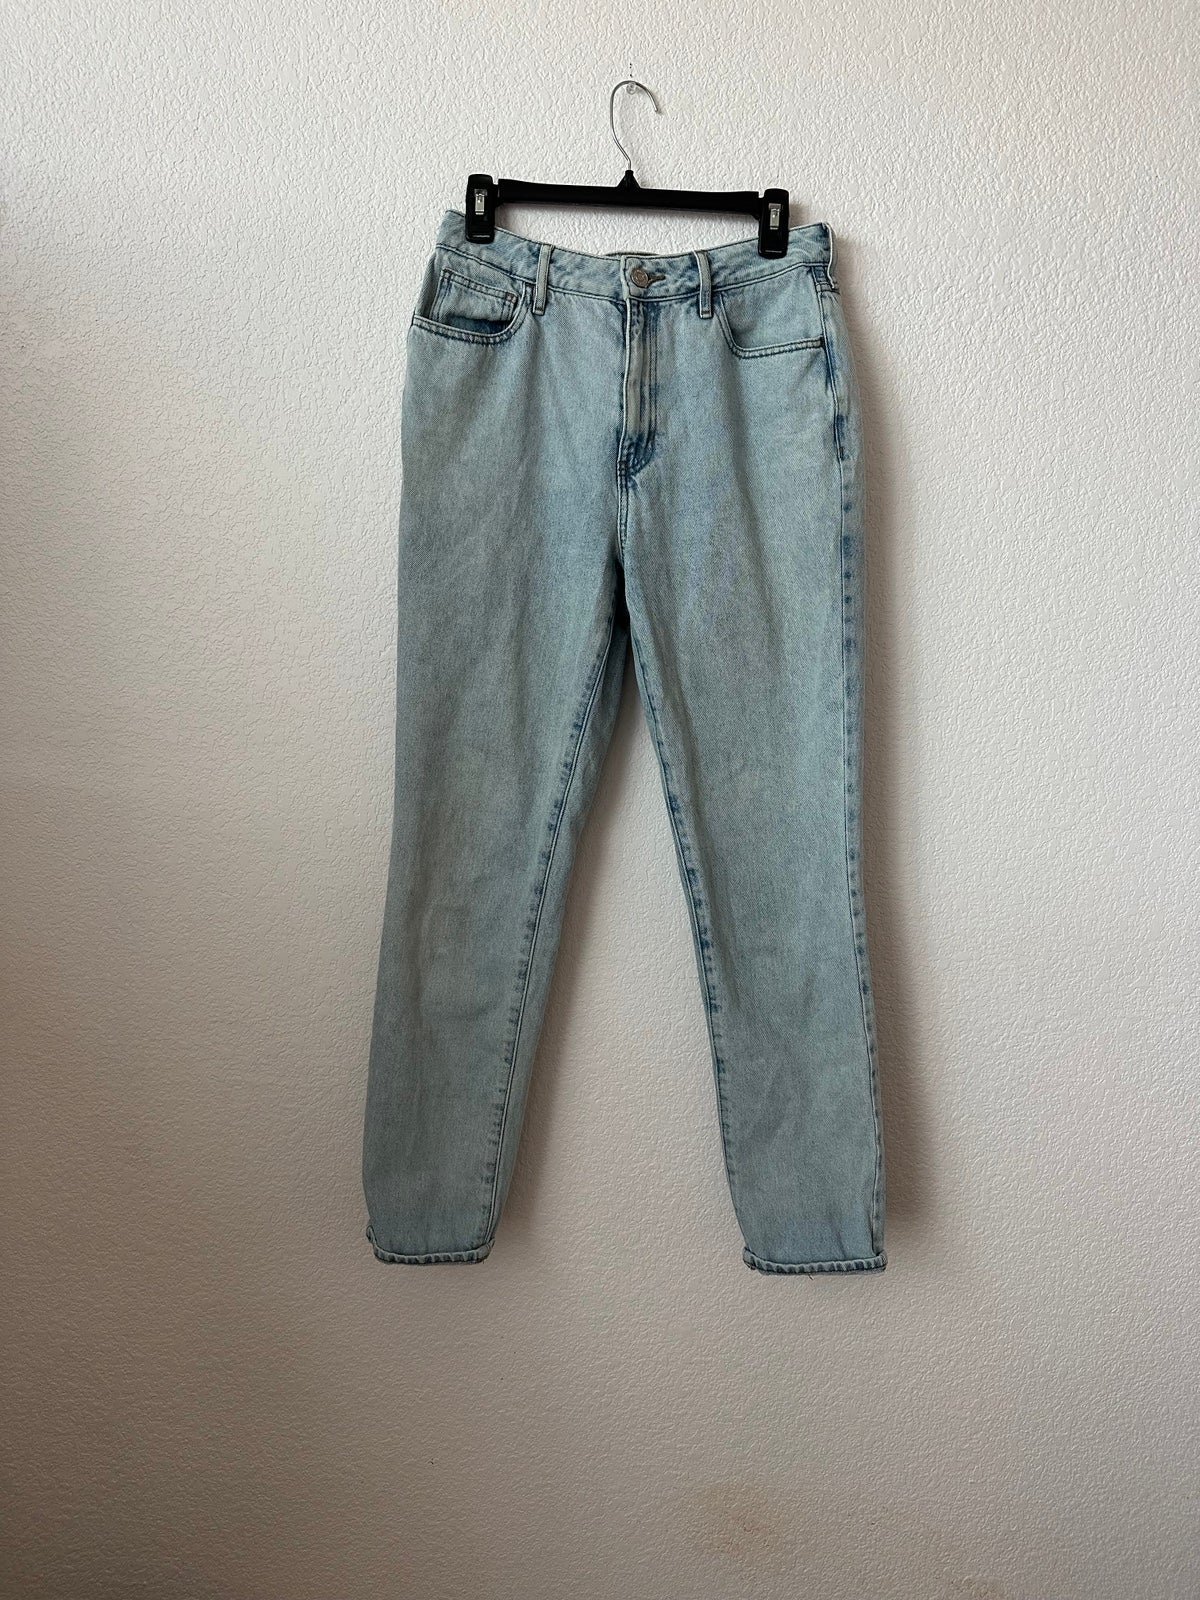 big discount Pacsun Mom Jeans Women’s Size 29L MiNe5sZaF Store Online